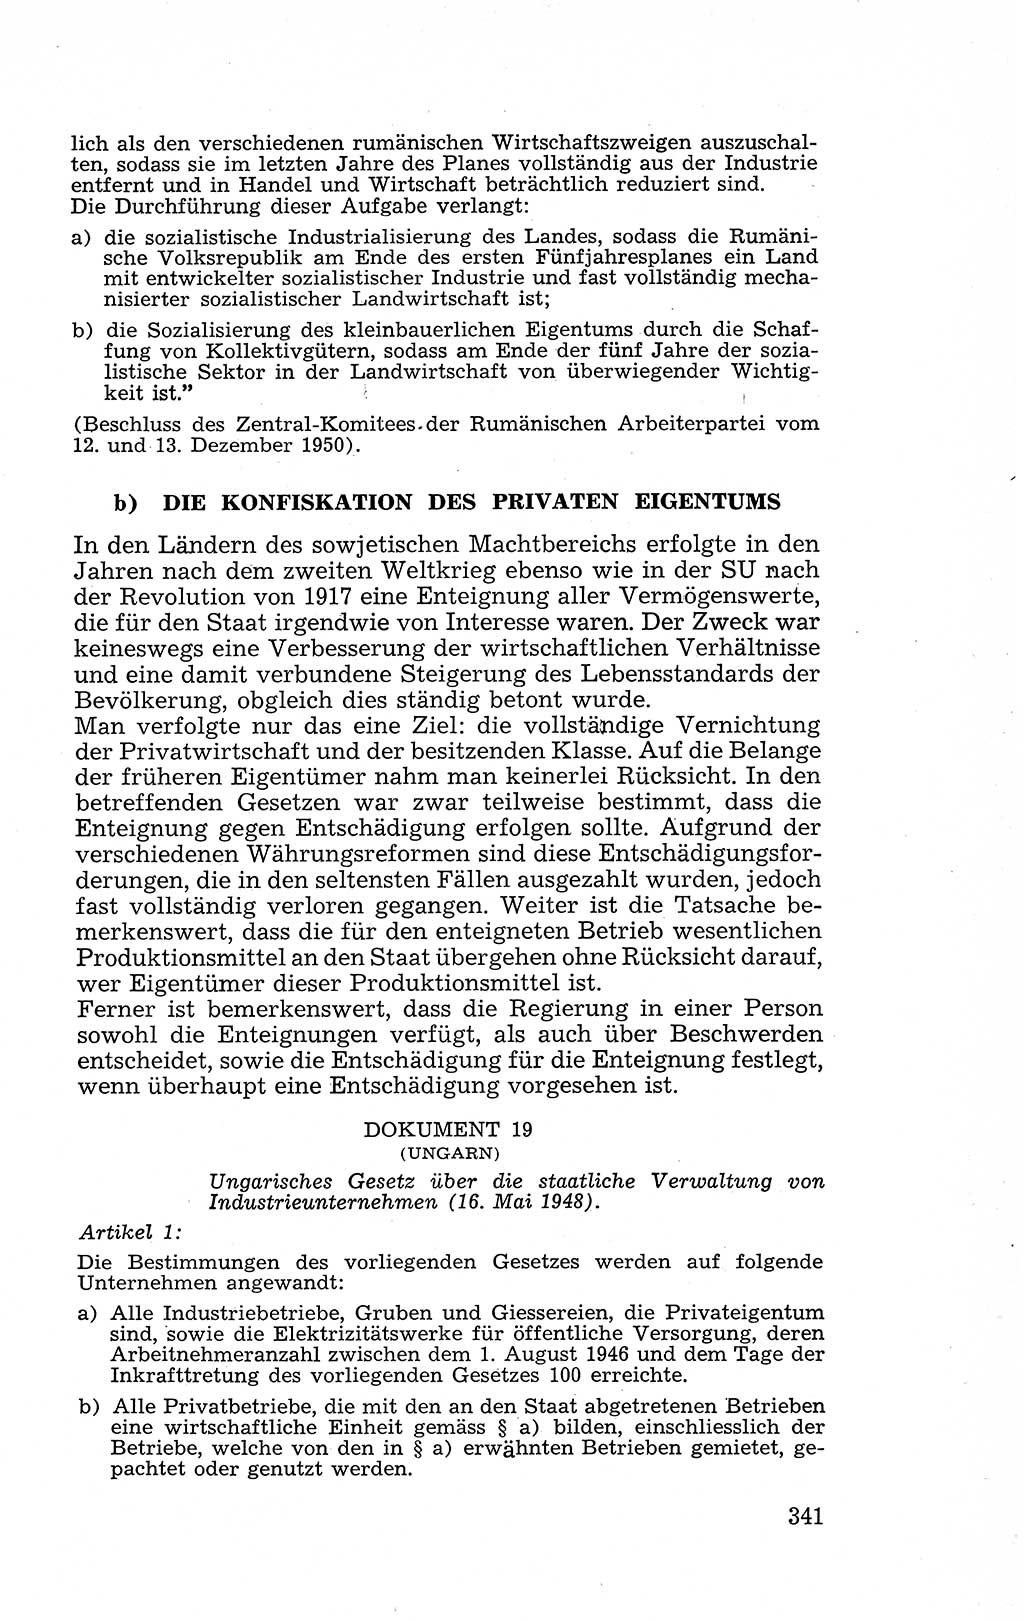 Recht in Fesseln, Dokumente, Internationale Juristen-Kommission [Bundesrepublik Deutschland (BRD)] 1955, Seite 341 (R. Dok. IJK BRD 1955, S. 341)